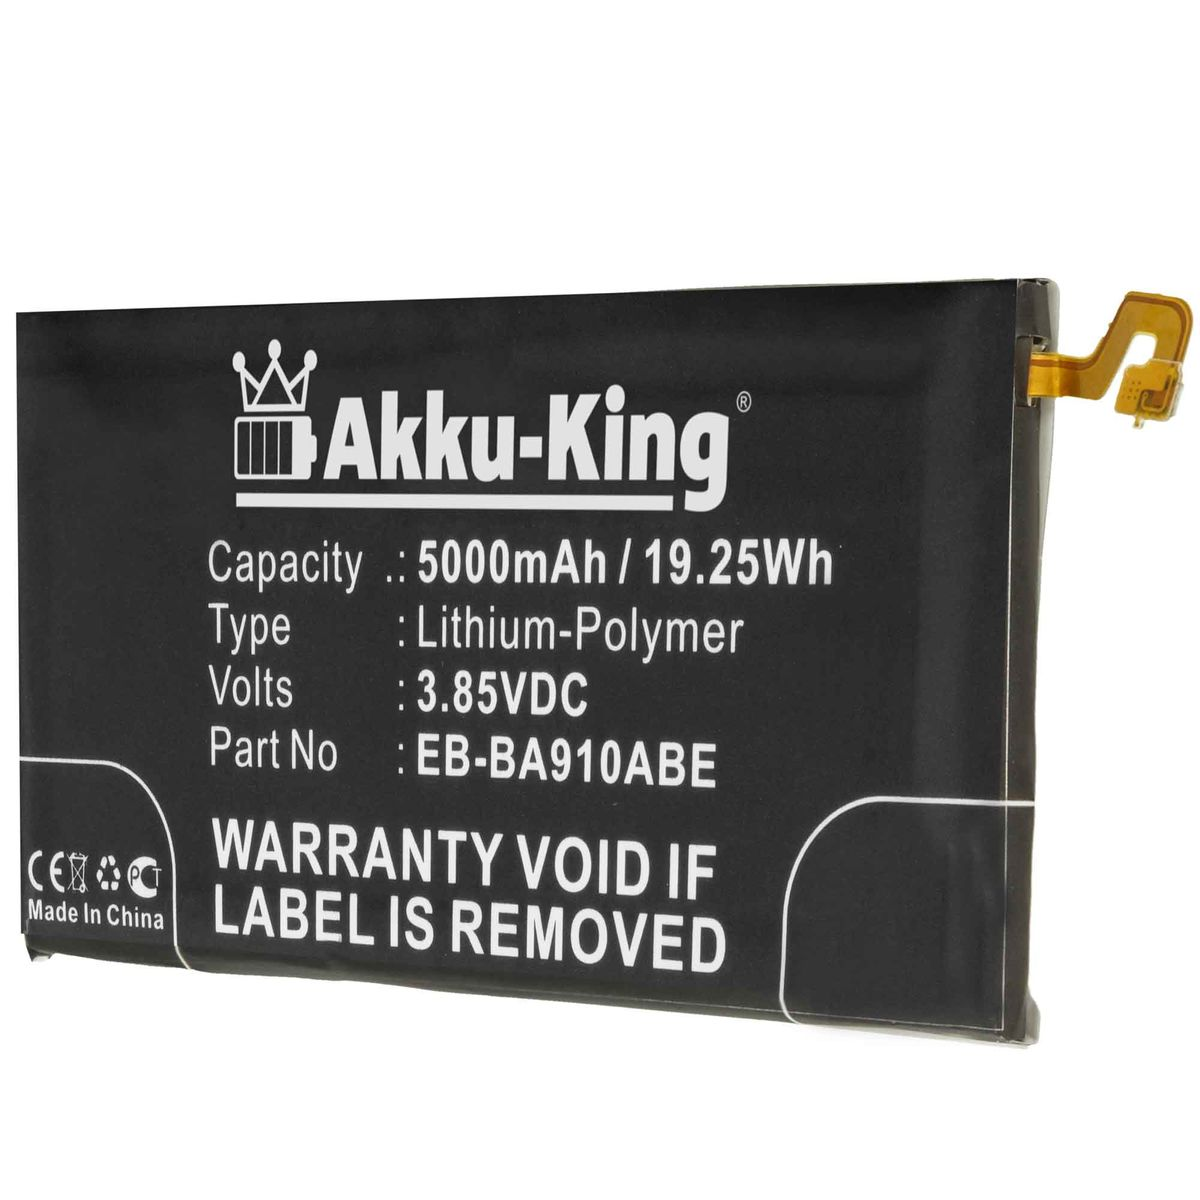 AKKU-KING Akku Li-Polymer 3.85 Handy-Akku, Samsung Volt, EB-BA910ABE kompatibel 5000mAh mit